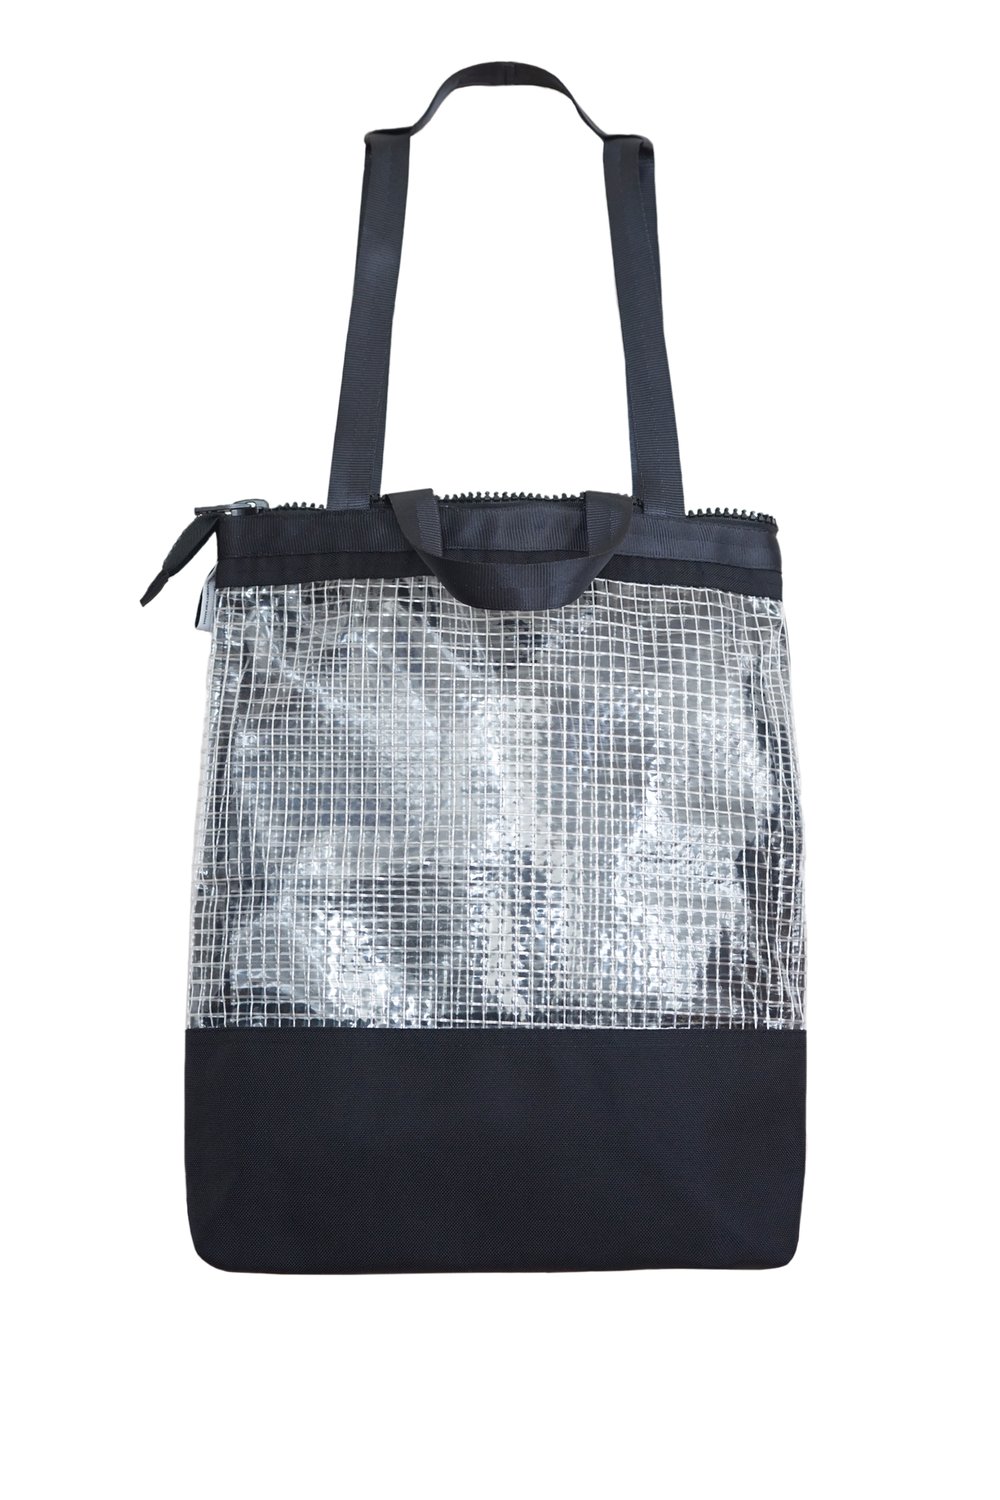 Image of Ghost bag — Noir  ( Attention la fermeture est blanche et non noire )